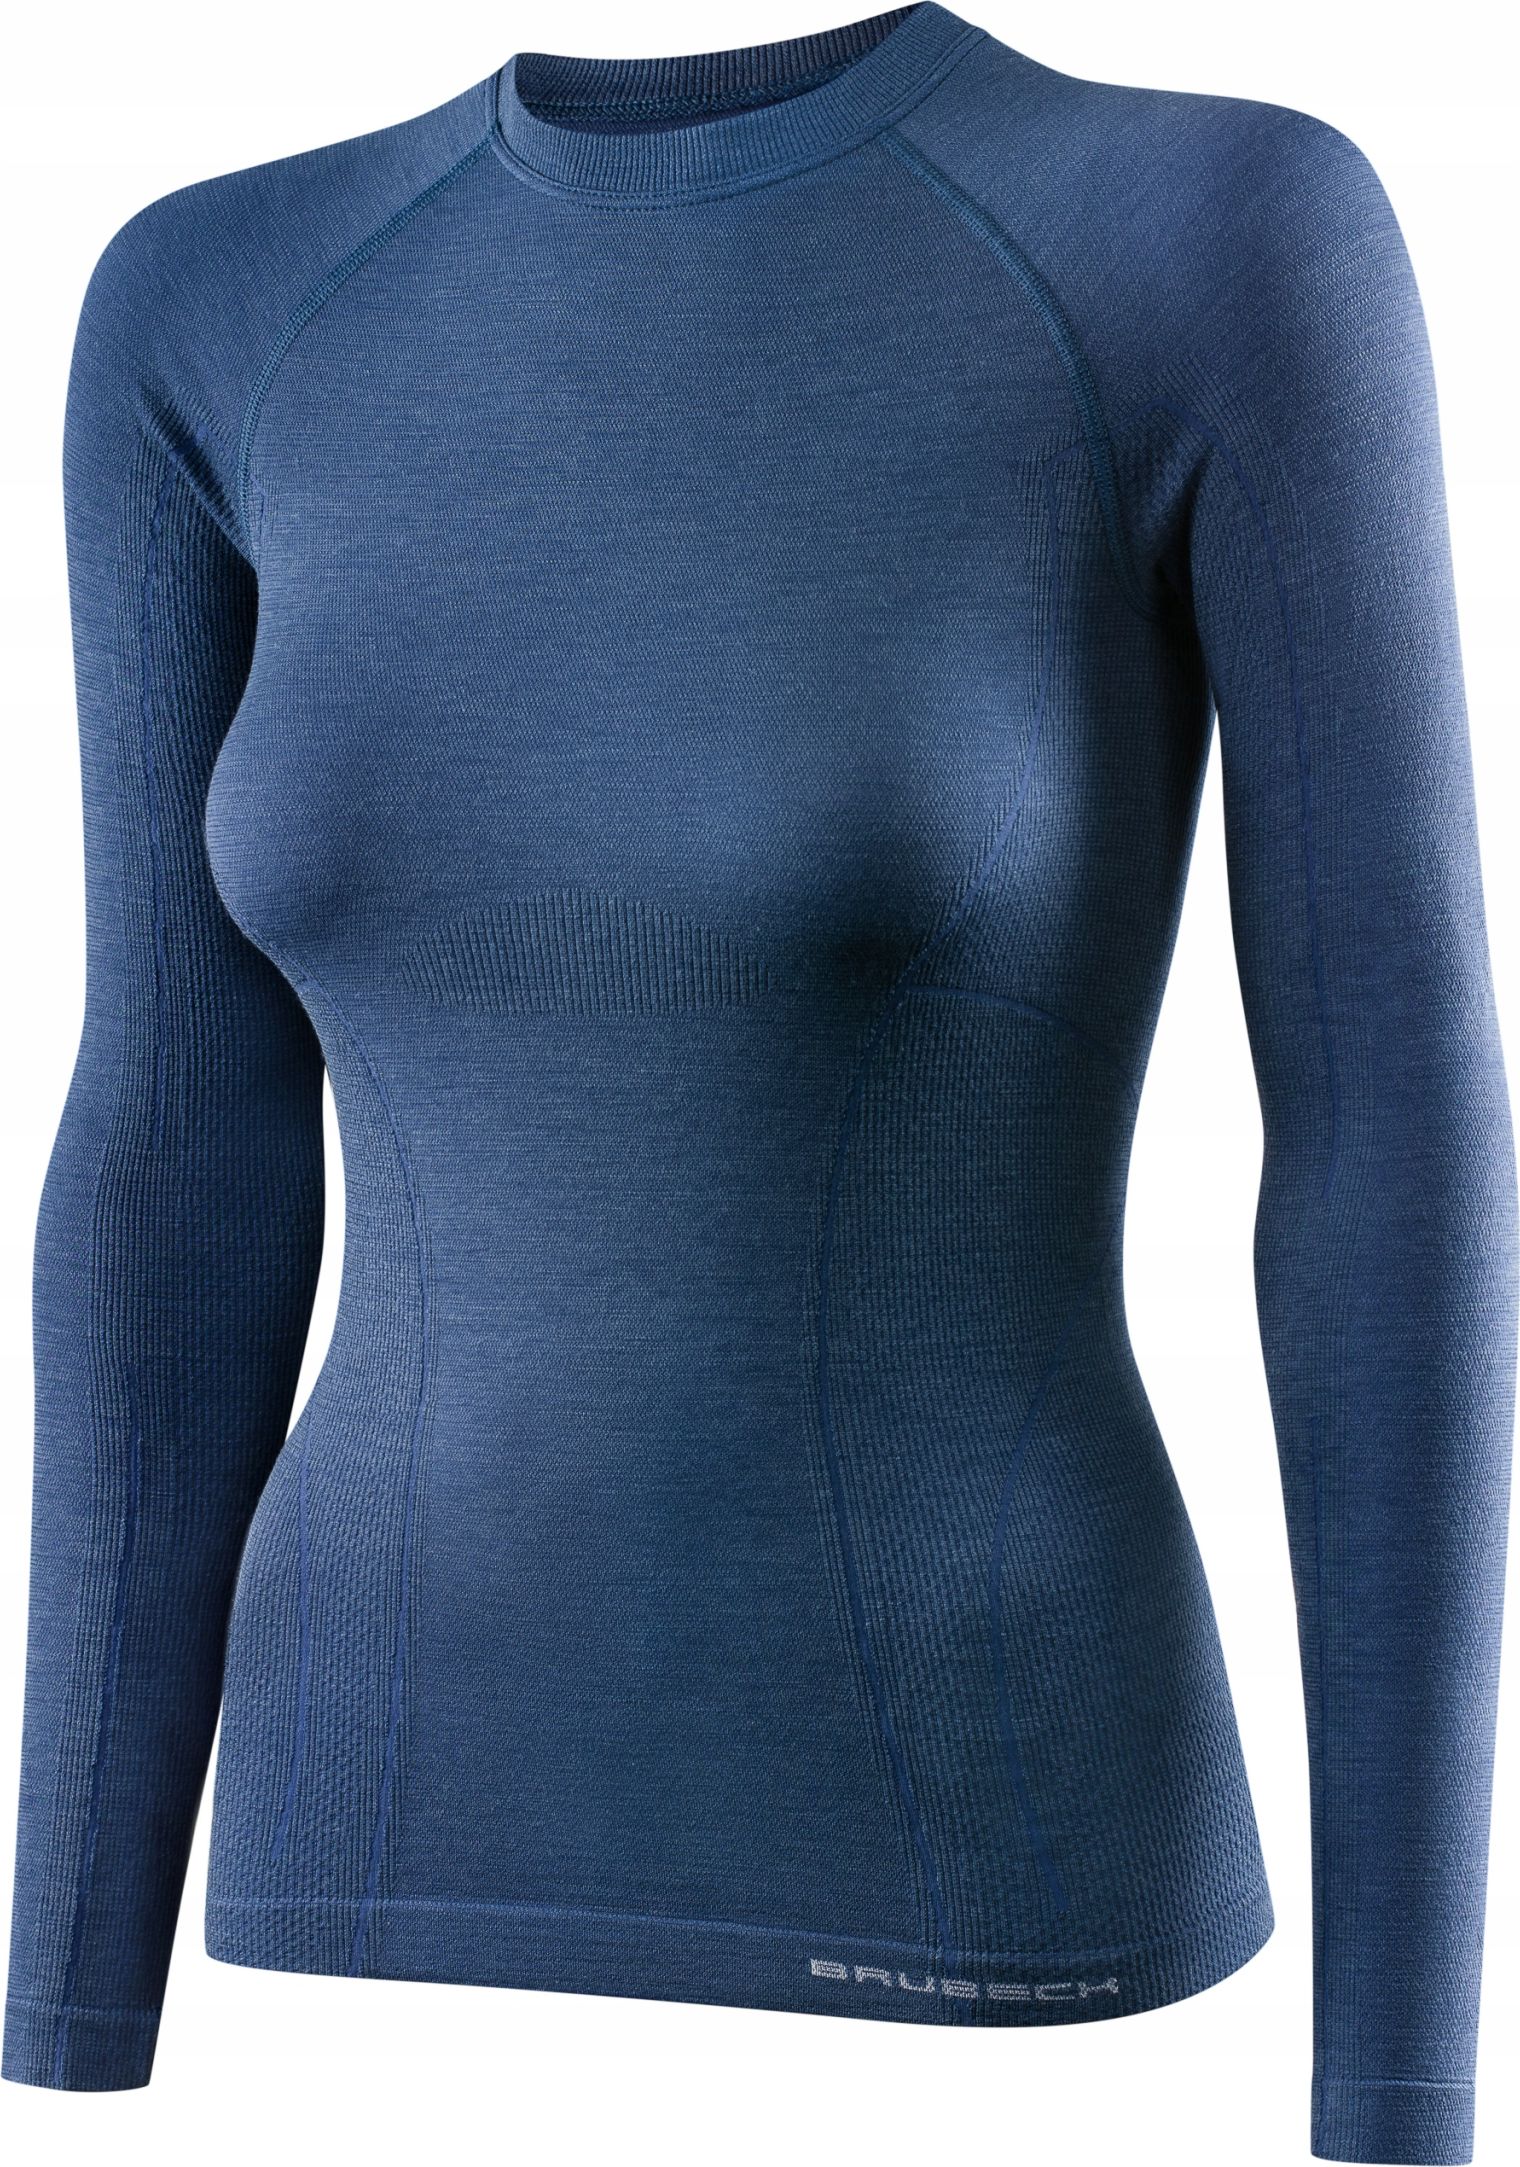 Tricou din denim cu mânecă lungă XL Brubeck LS12810 ACTIVE WOOL pentru femei